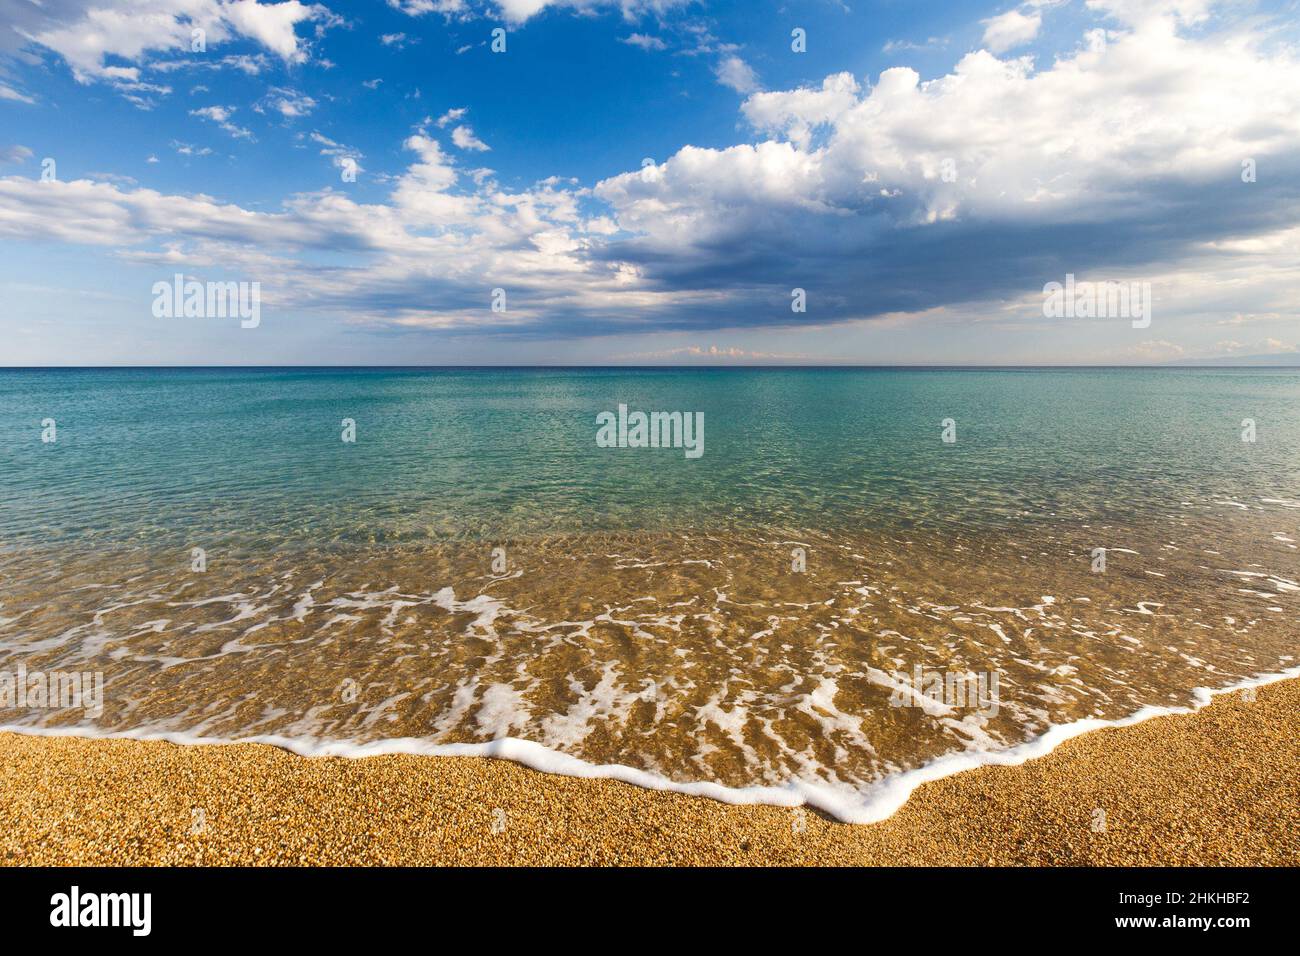 Ruhiges türkisfarbenes Meer und Wolken am blauen Himmel in Italien, Europa. Kleine Wellen an einem Sandstrand im Vordergrund. Stockfoto